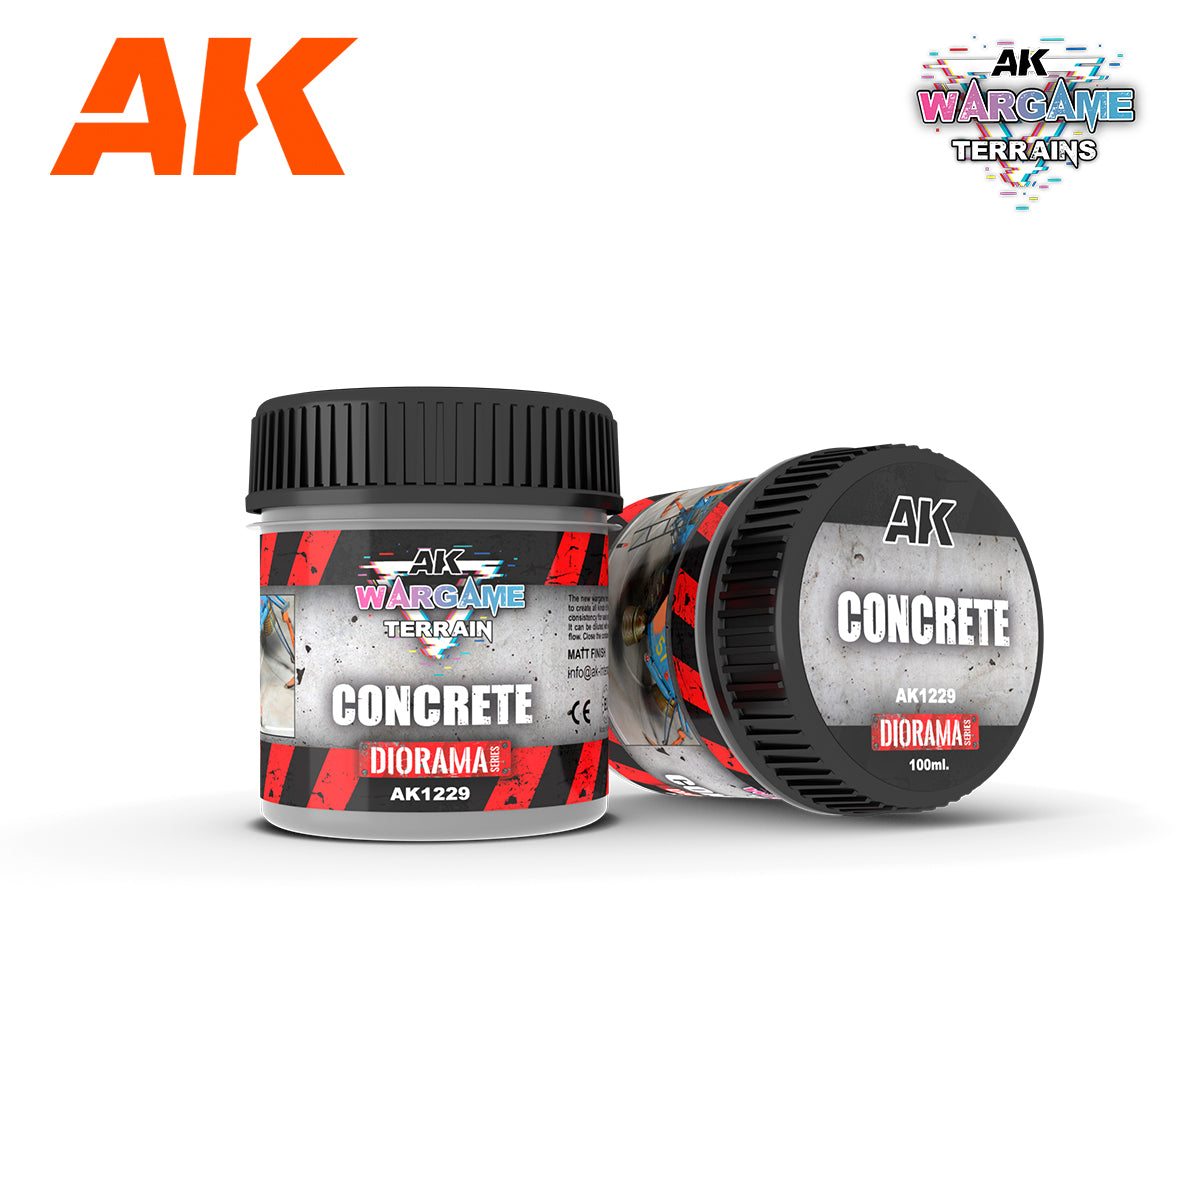 AK1229 - Concrete - 100ml